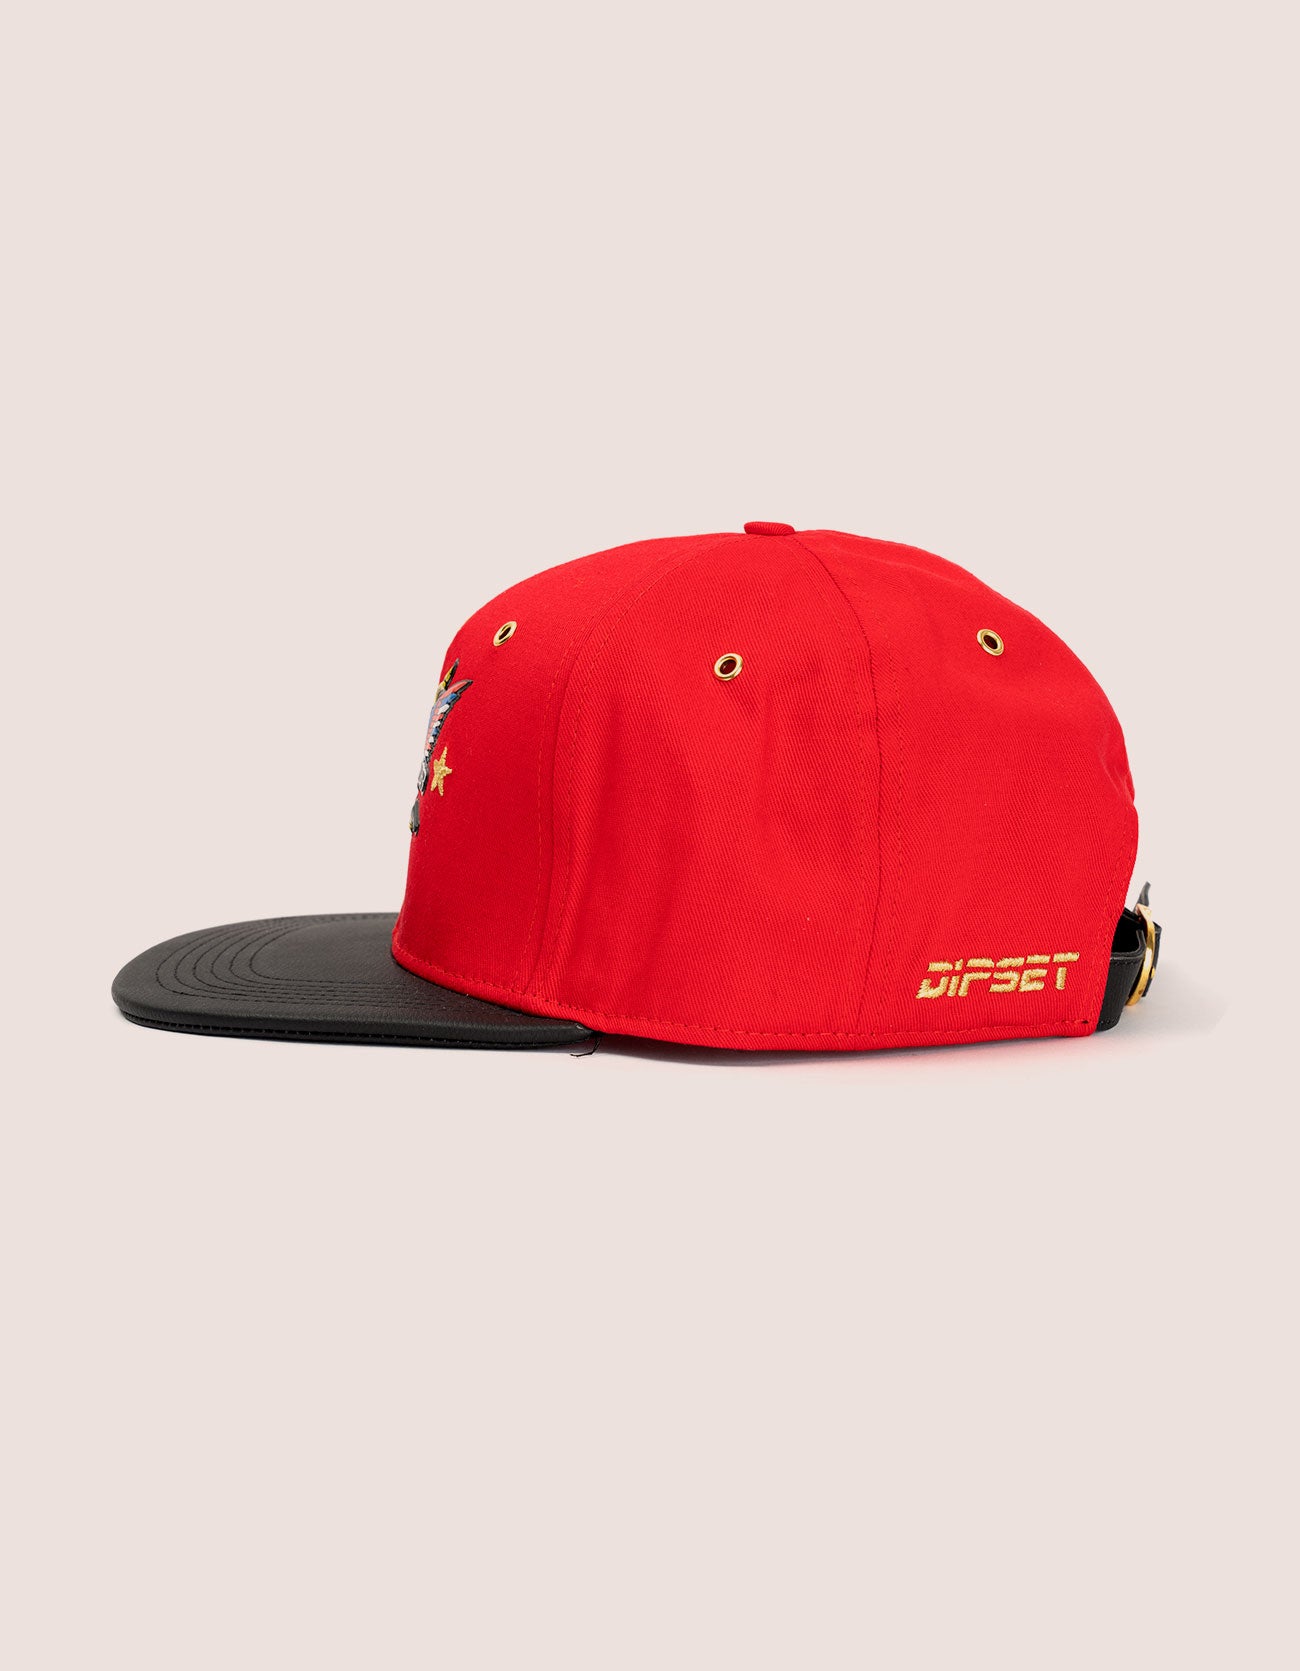 RED STAR OG HAT